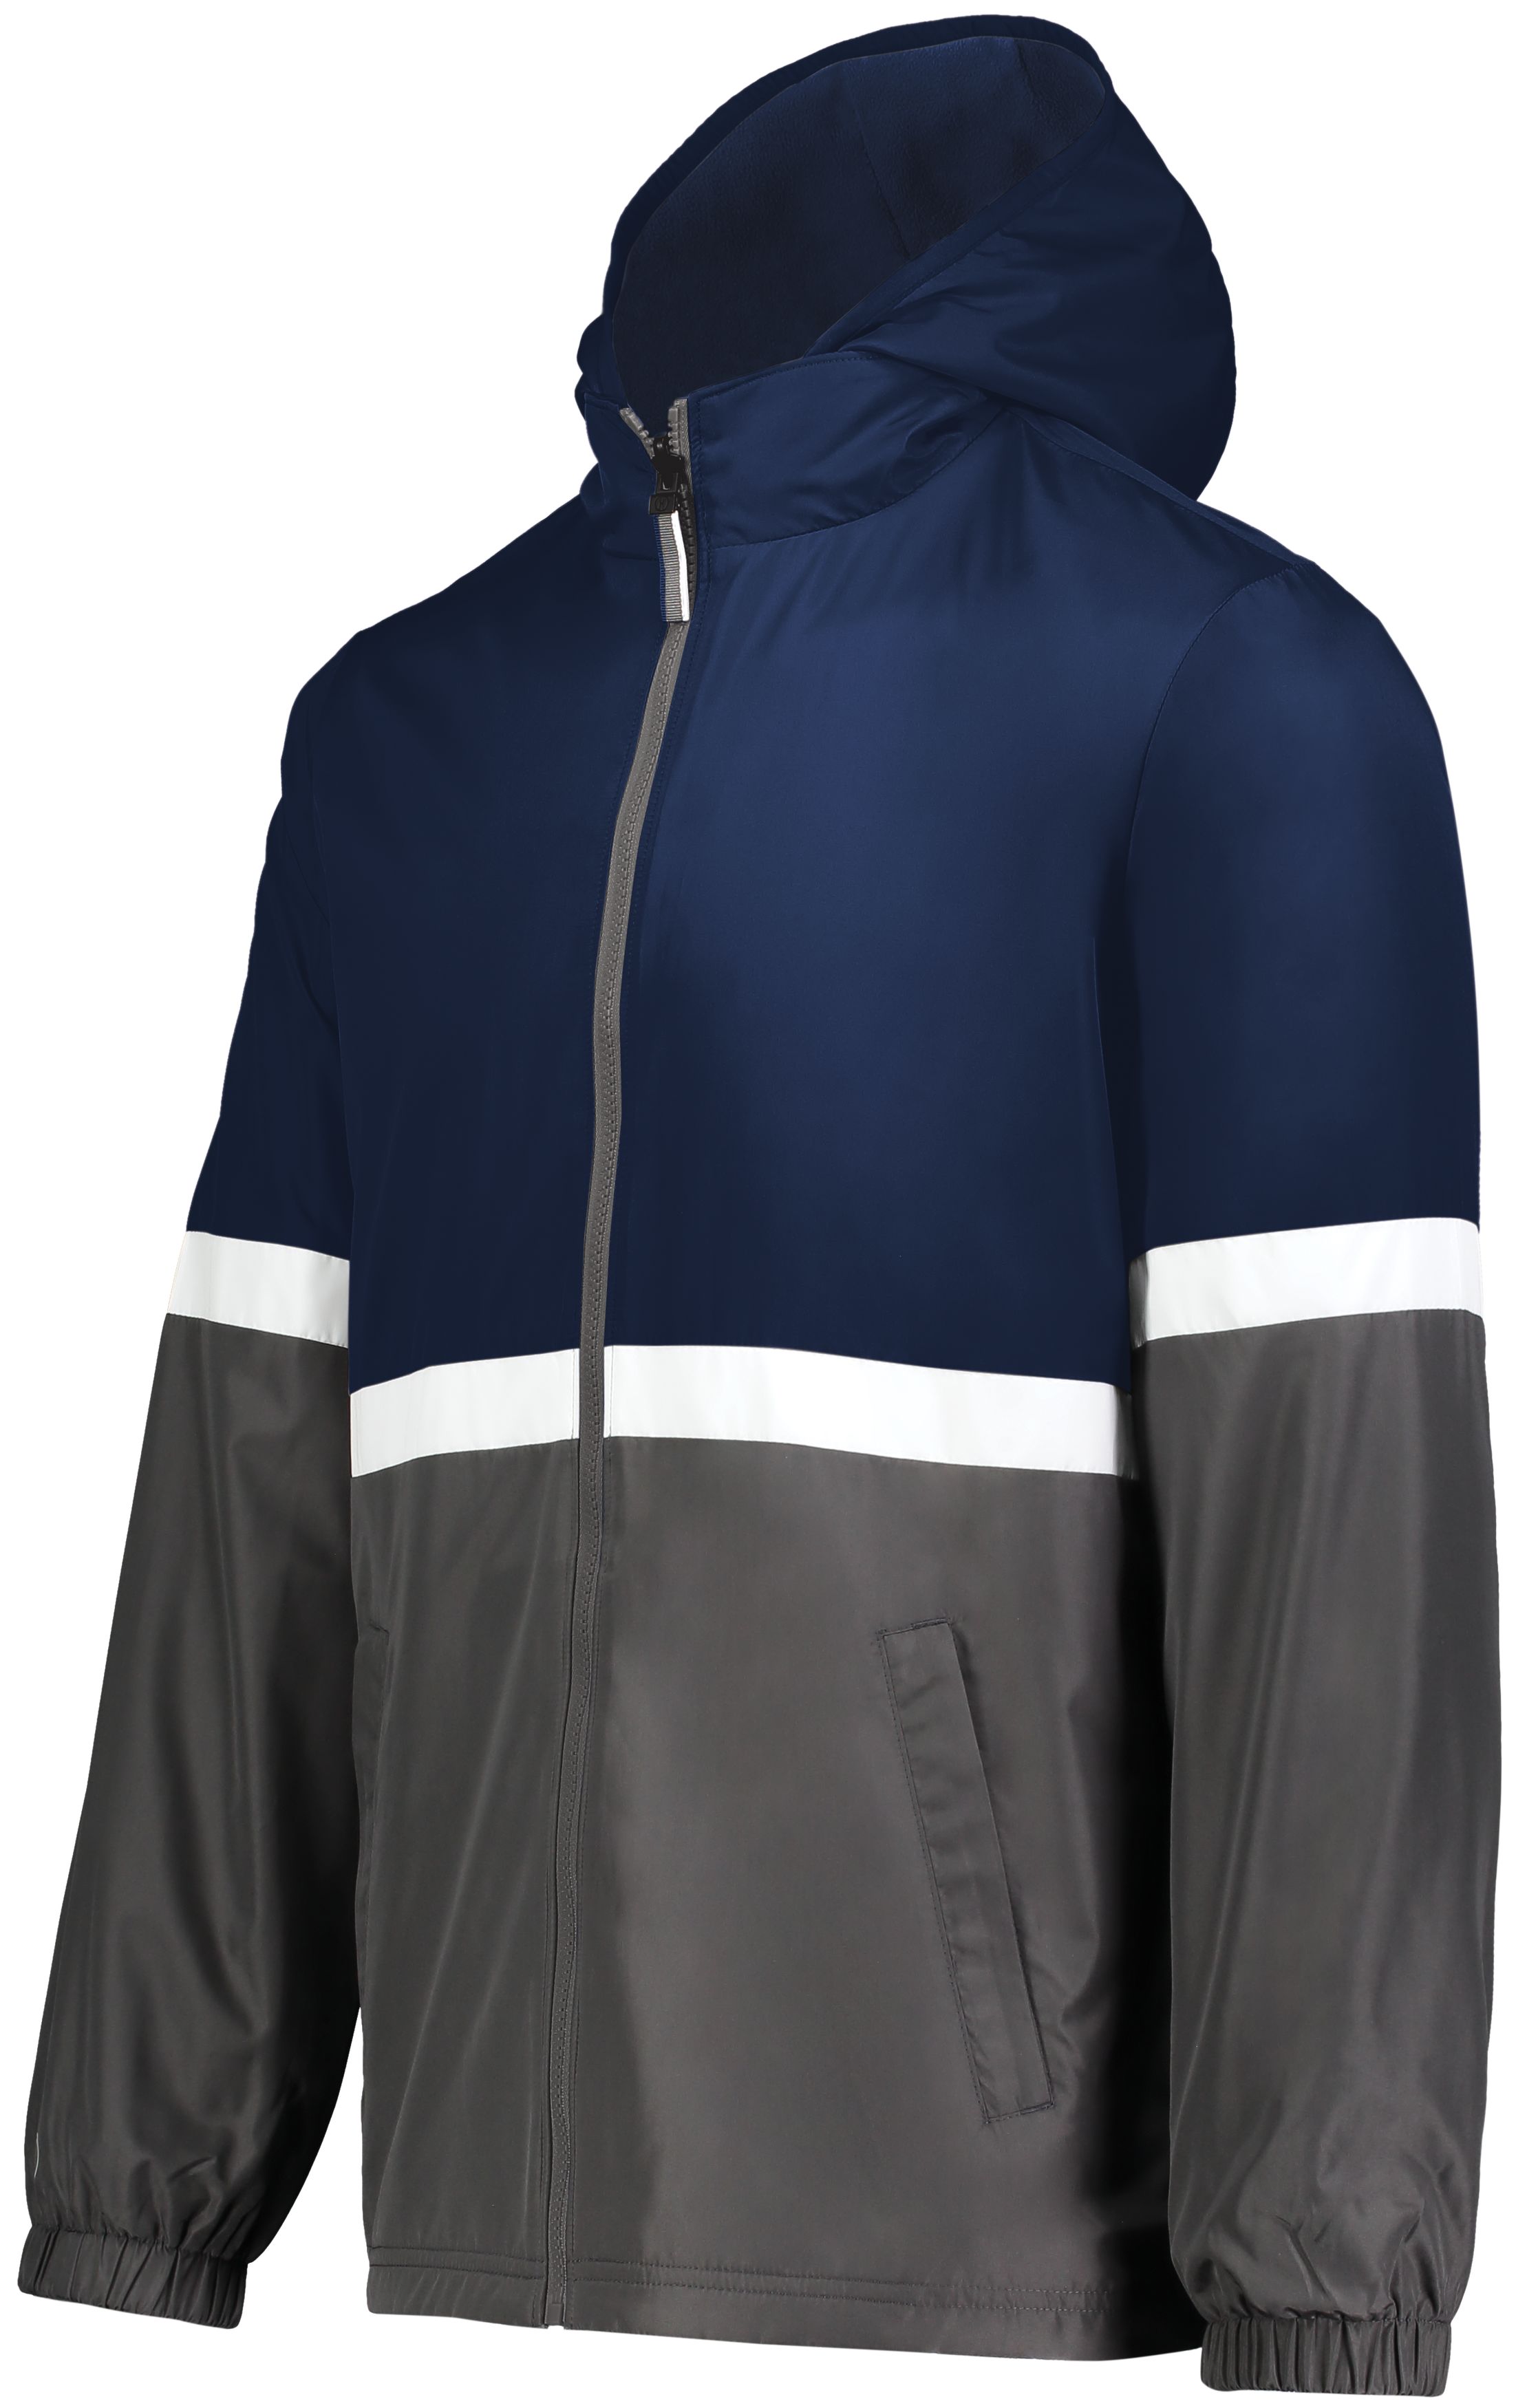 Youth Jackets & Outerwear  Augusta Sportswear Brands